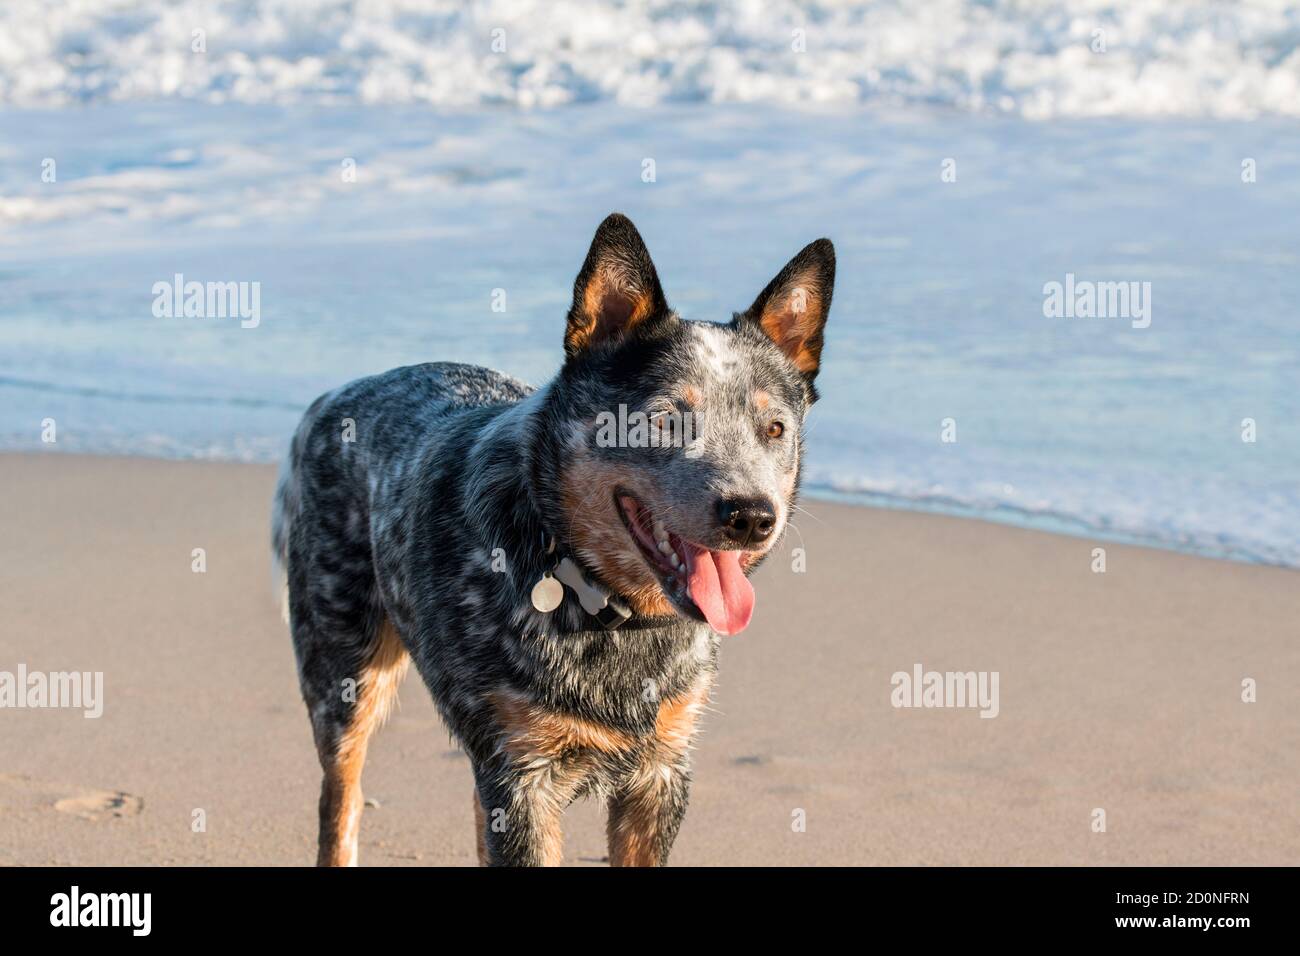 Australischer Rinderhund steht am Strand in der Sonne Nahaufnahme mit einer brechenden Welle im Hintergrund Stockfoto